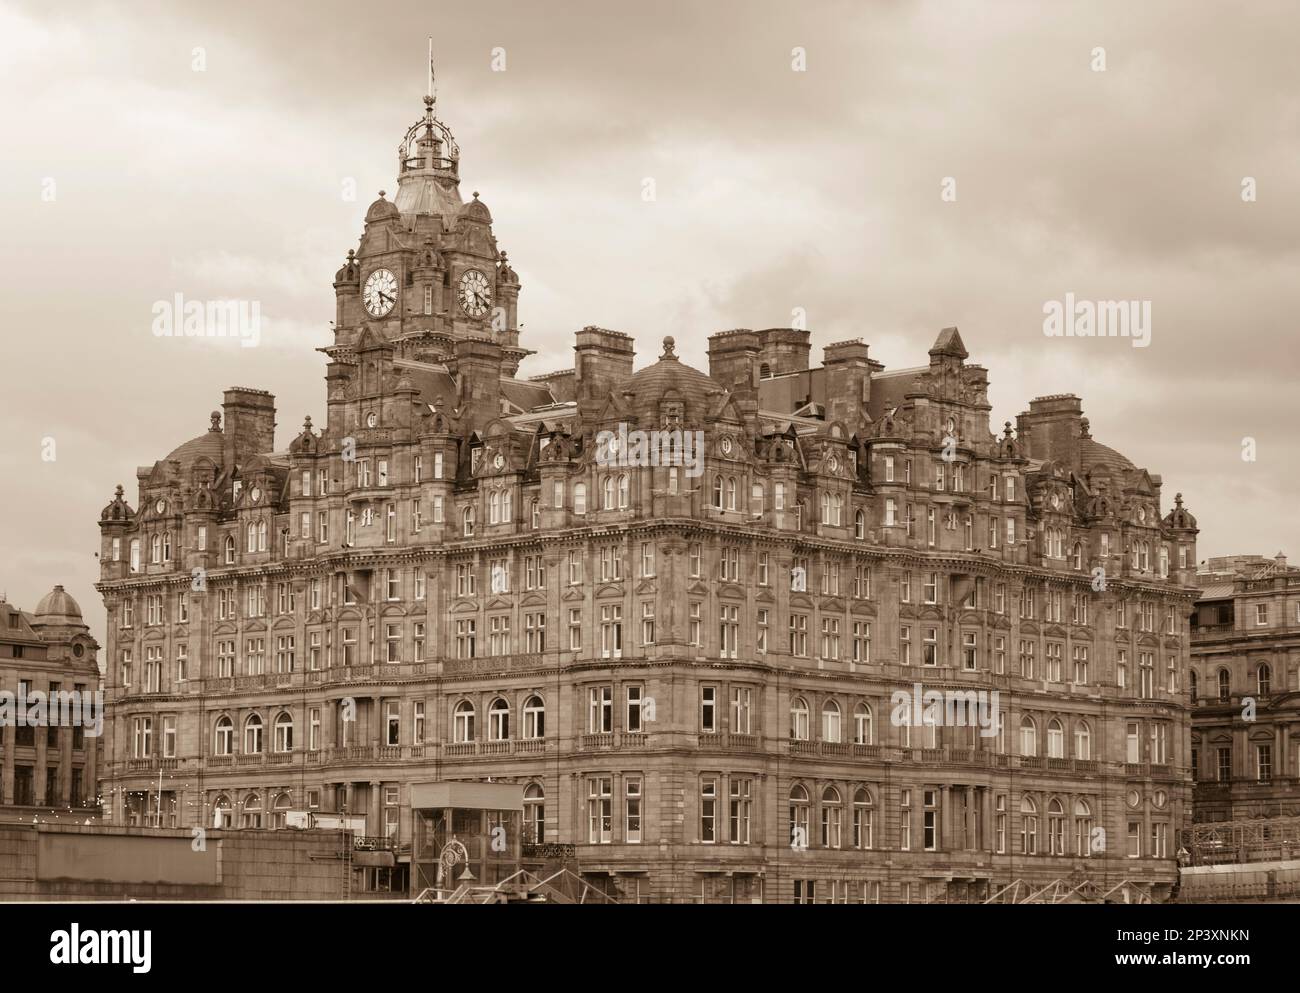 EDINBURGH, SCOTLAND, EUROPE - The Balmoral Hotel, on Princes Street. Stock Photo